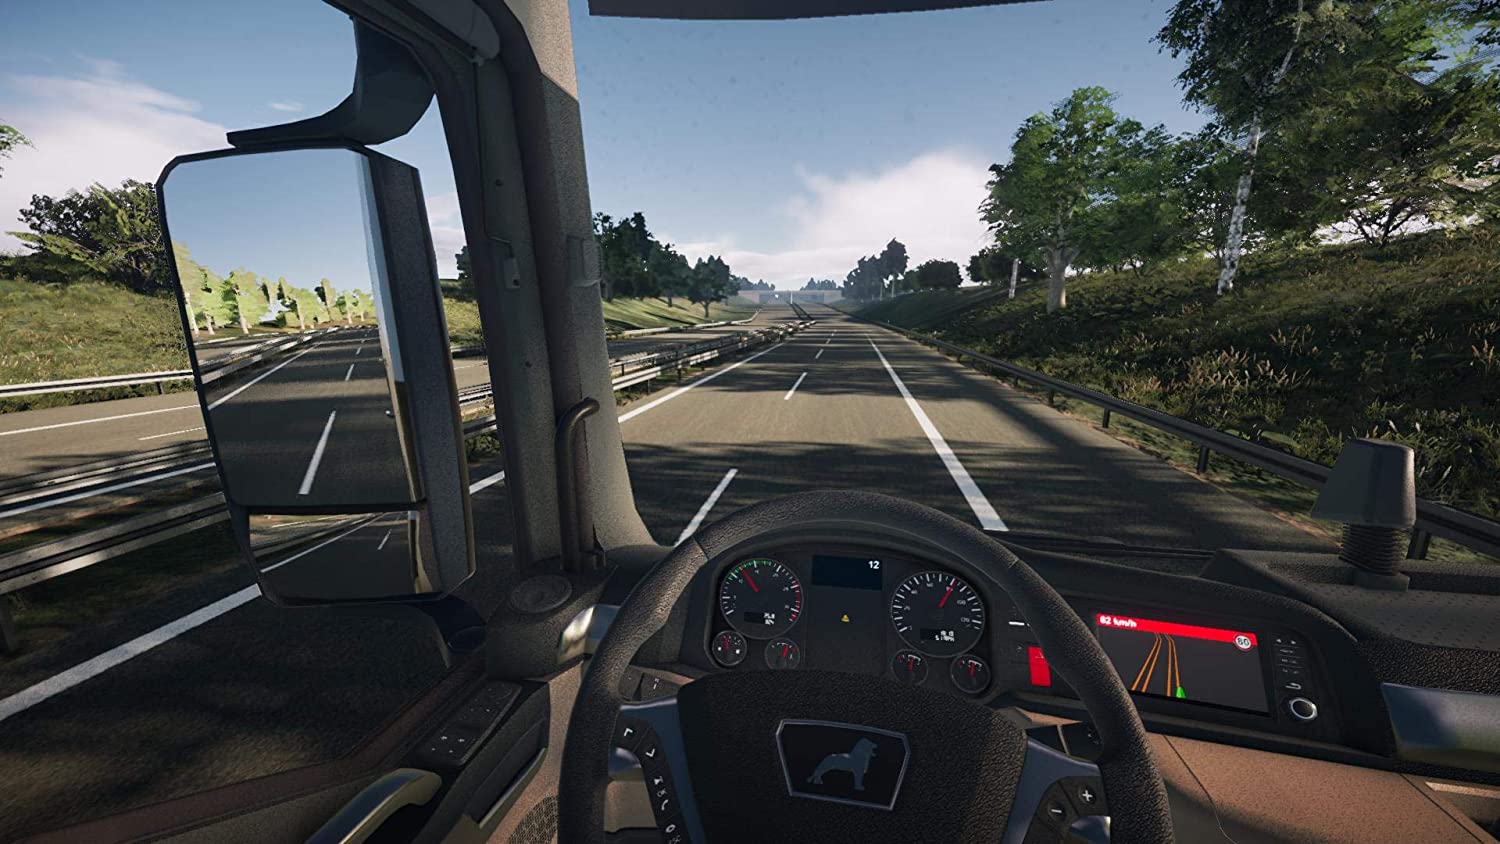 Новые обновления игр симуляторы. On the Road – Truck Simulation игра. Truck Simulator ps4. On the Road Truck Simulator для PLAYSTATION 4. Евро трак симулятор на ПС 4.